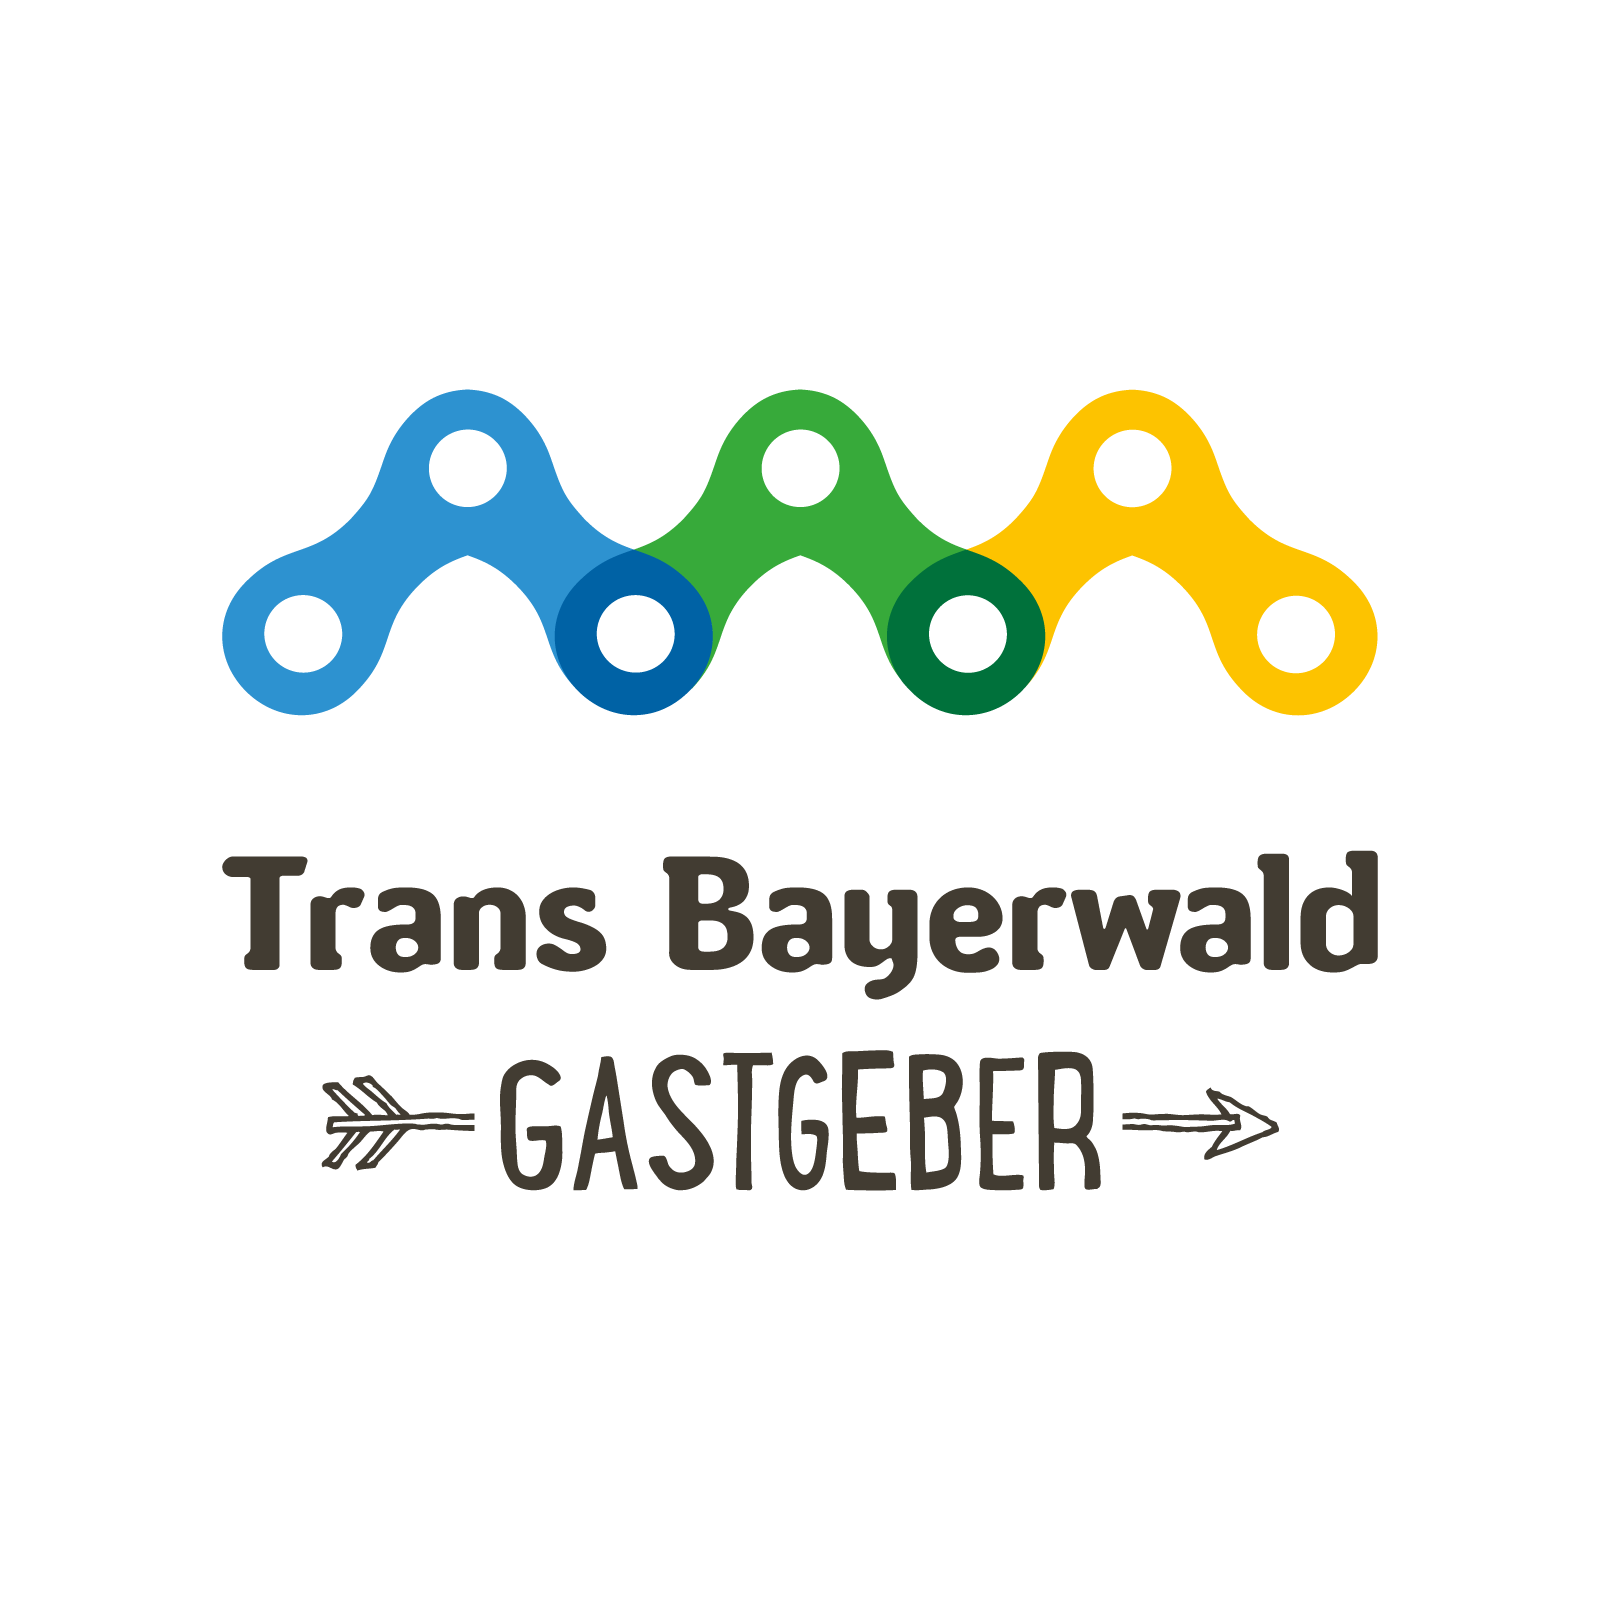 TBW Gastgeber Logo 4c B Color